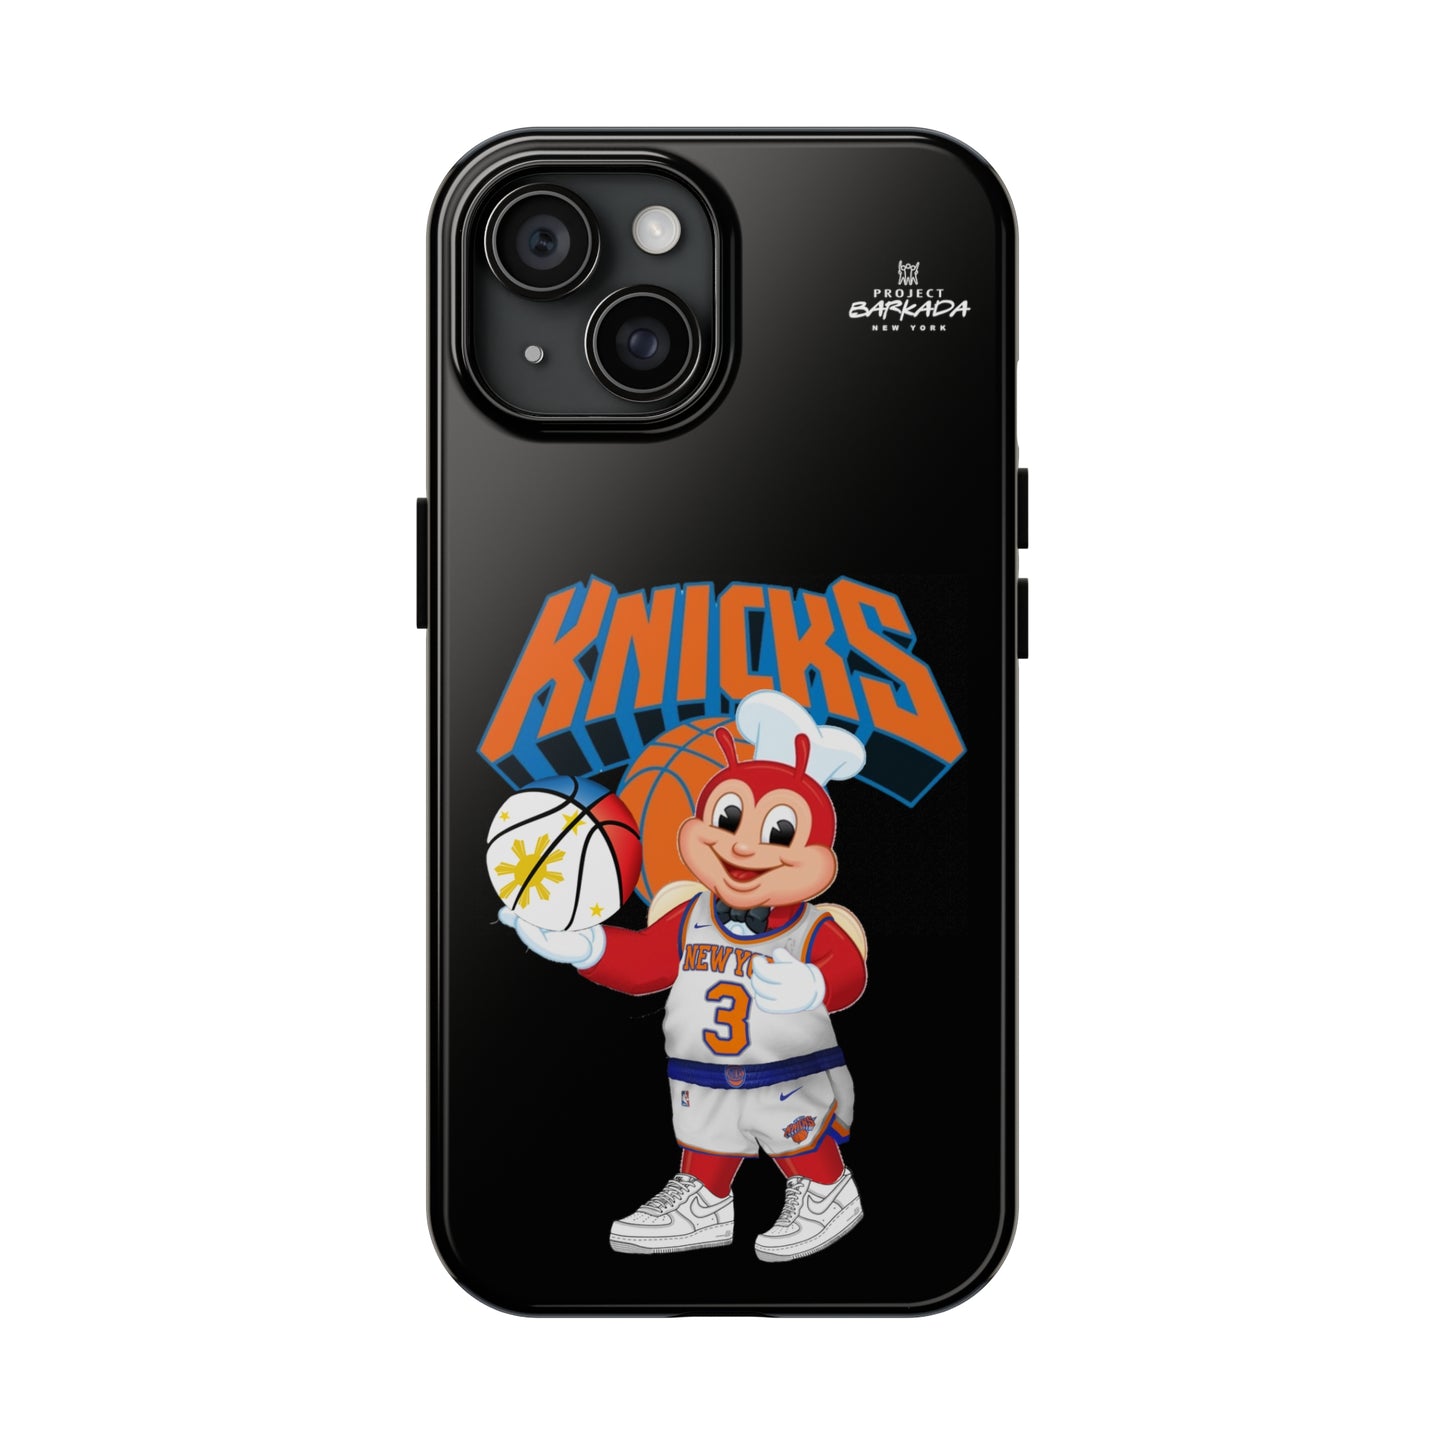 Knicks Jolobear Iphone case